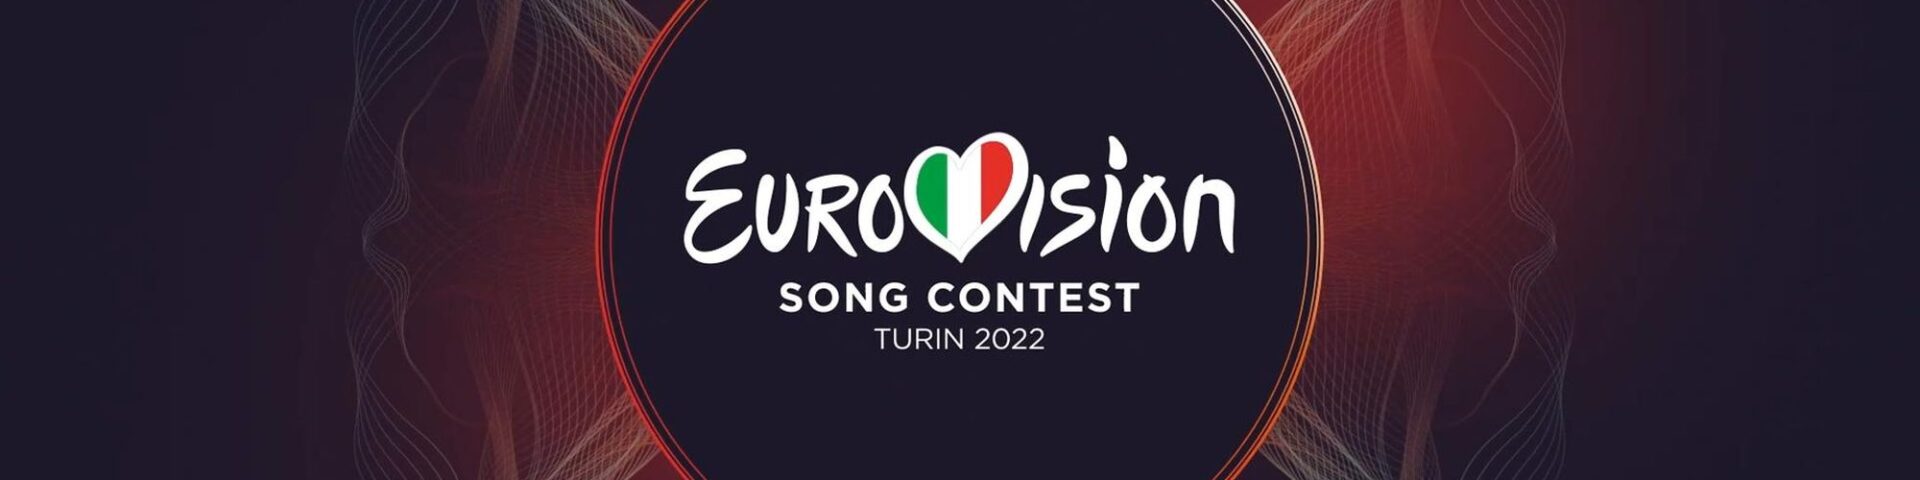 L’Eurovision Song Contest 2022 è in diretta o registrato?